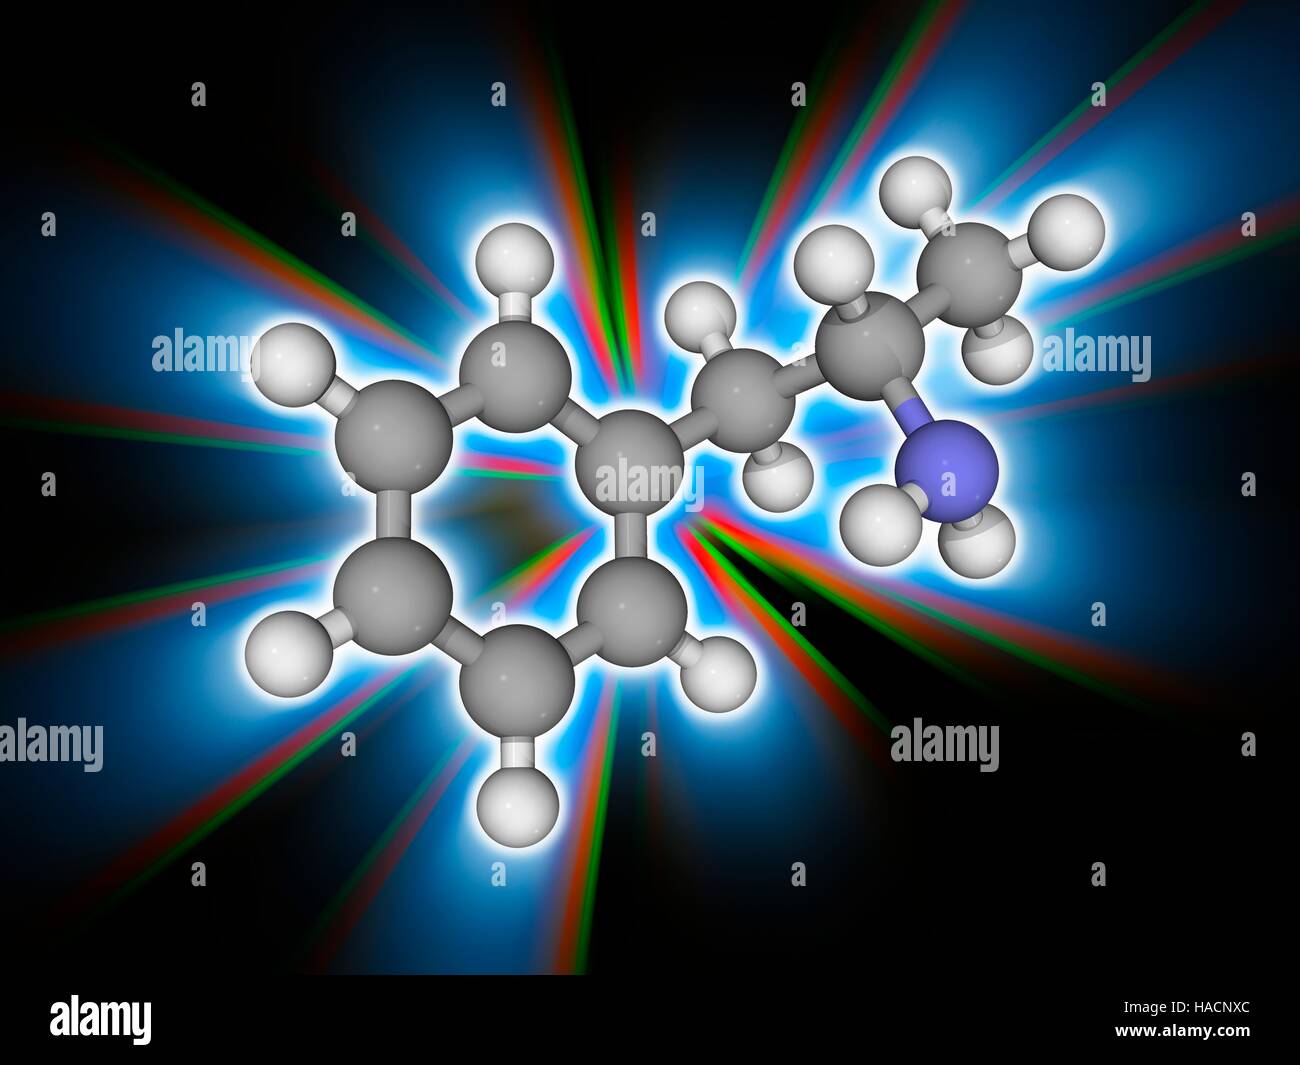 Amphetamin. Molekulares Modell des Psychostimulans Droge Amphetamin (C9. H13. (N), ein Medikament, das produziert erhöht Wachheit und Konzentration sowie verringerte Müdigkeit und Appetitlosigkeit. Atome als Kugeln dargestellt werden und sind farblich gekennzeichnet: Kohlenstoff (grau), Wasserstoff (weiß) und Stickstoff (blau). Abbildung. Stockfoto